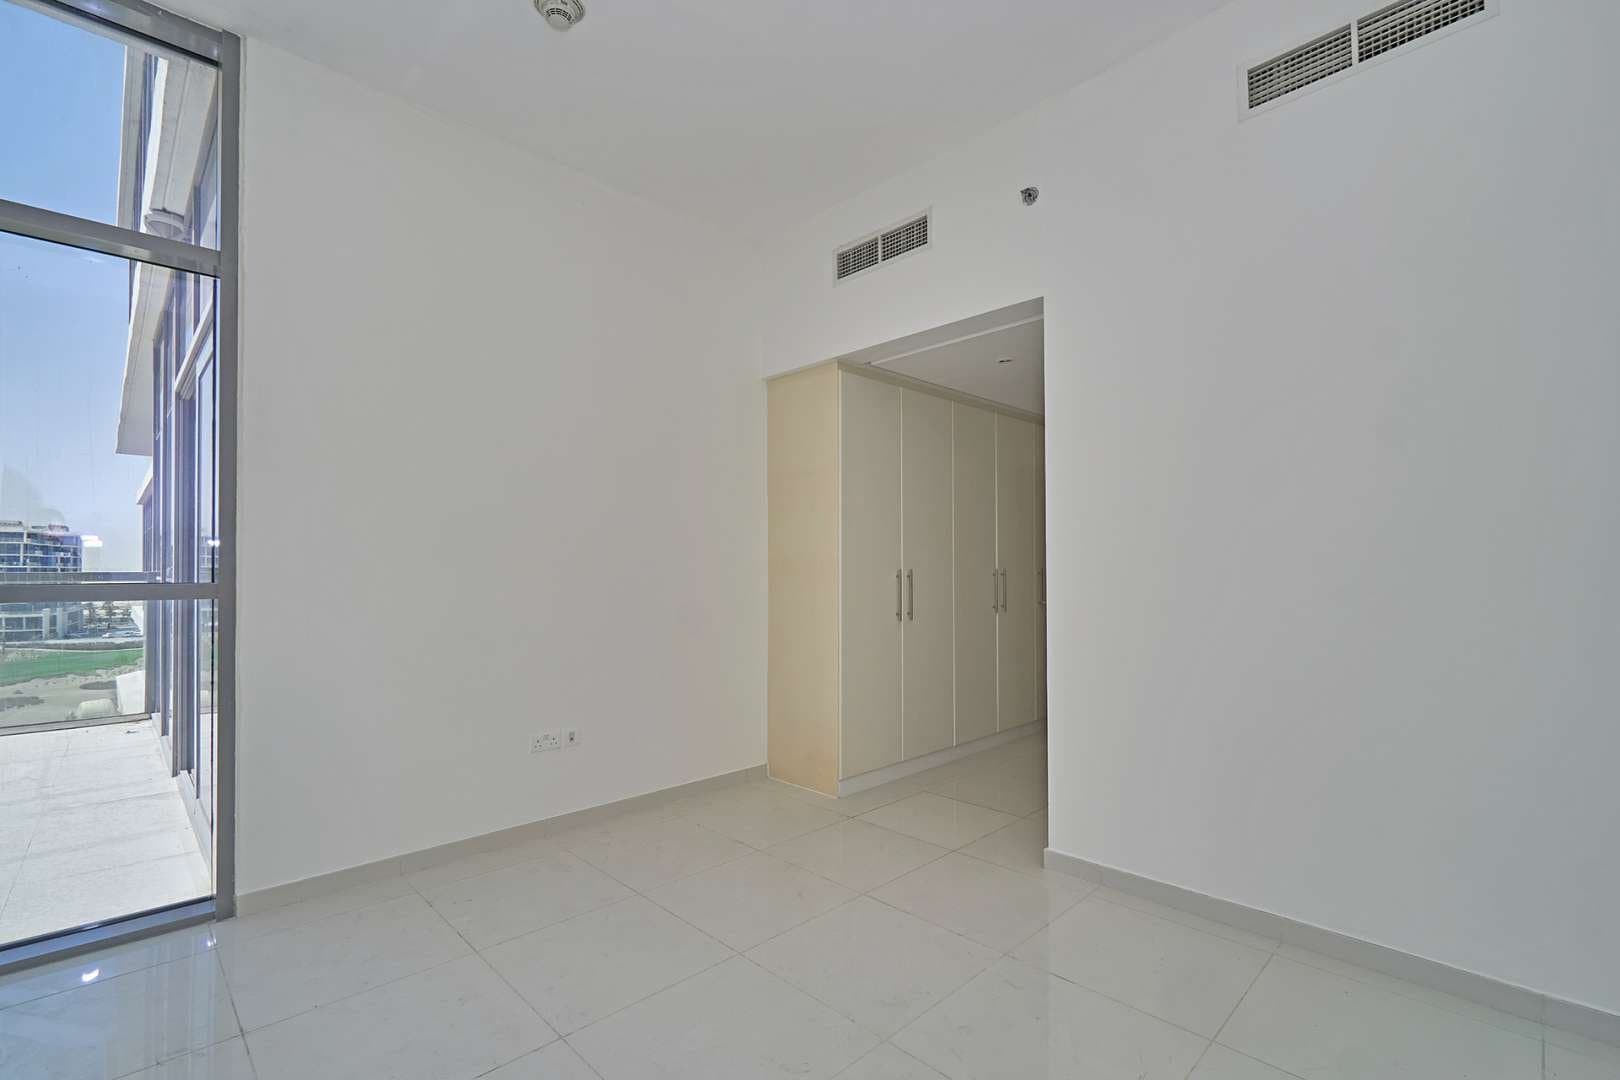 2 Bedroom Apartment For Rent Golf Vista Lp05945 235d9f8495b6e800.jpg